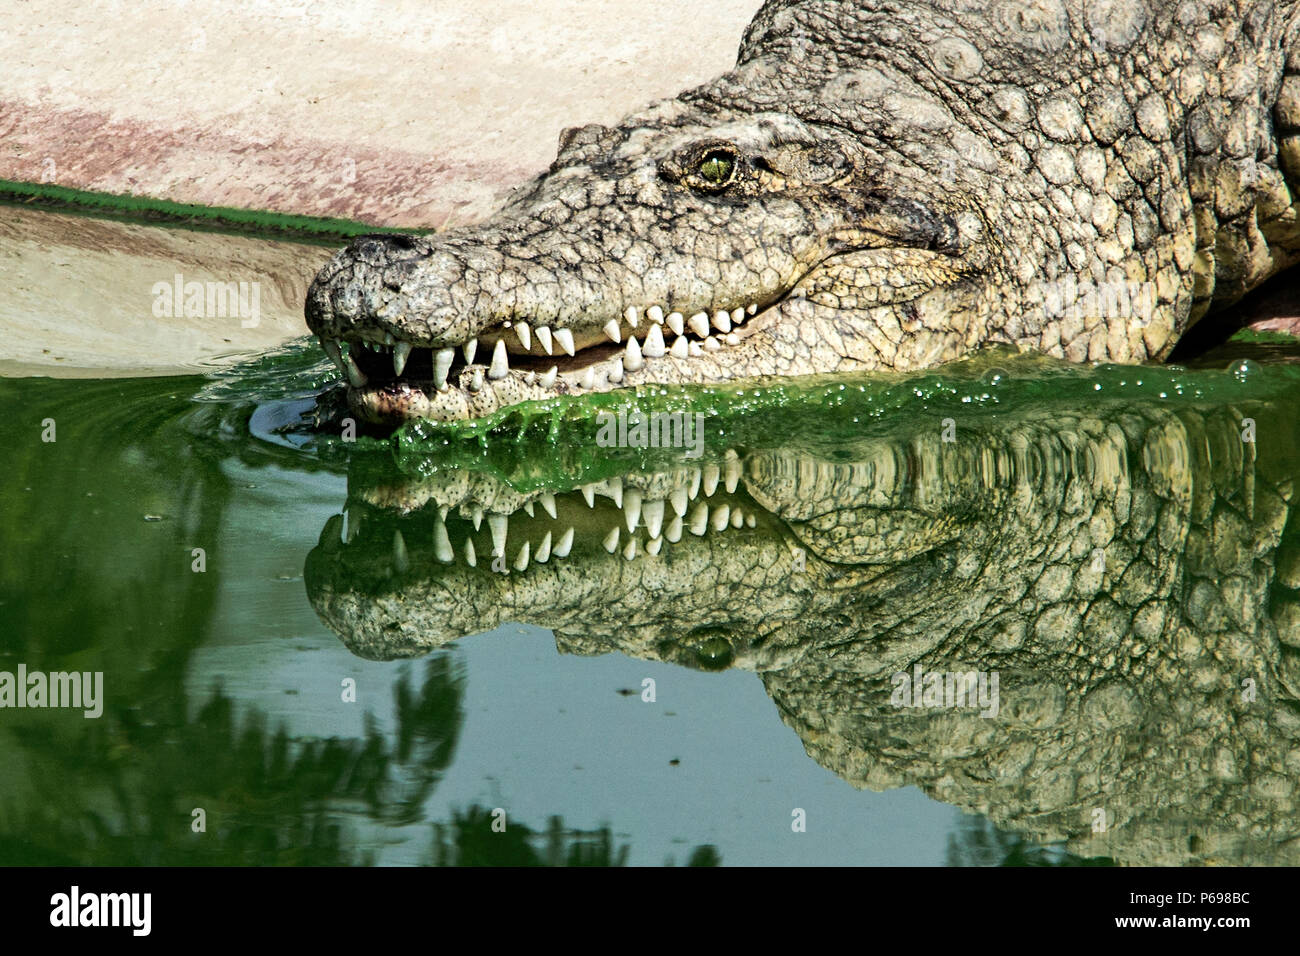 - Le crocodile du Nil Crocodylus niloticus - entrée dans l'eau montrant des réflexions. Banque D'Images